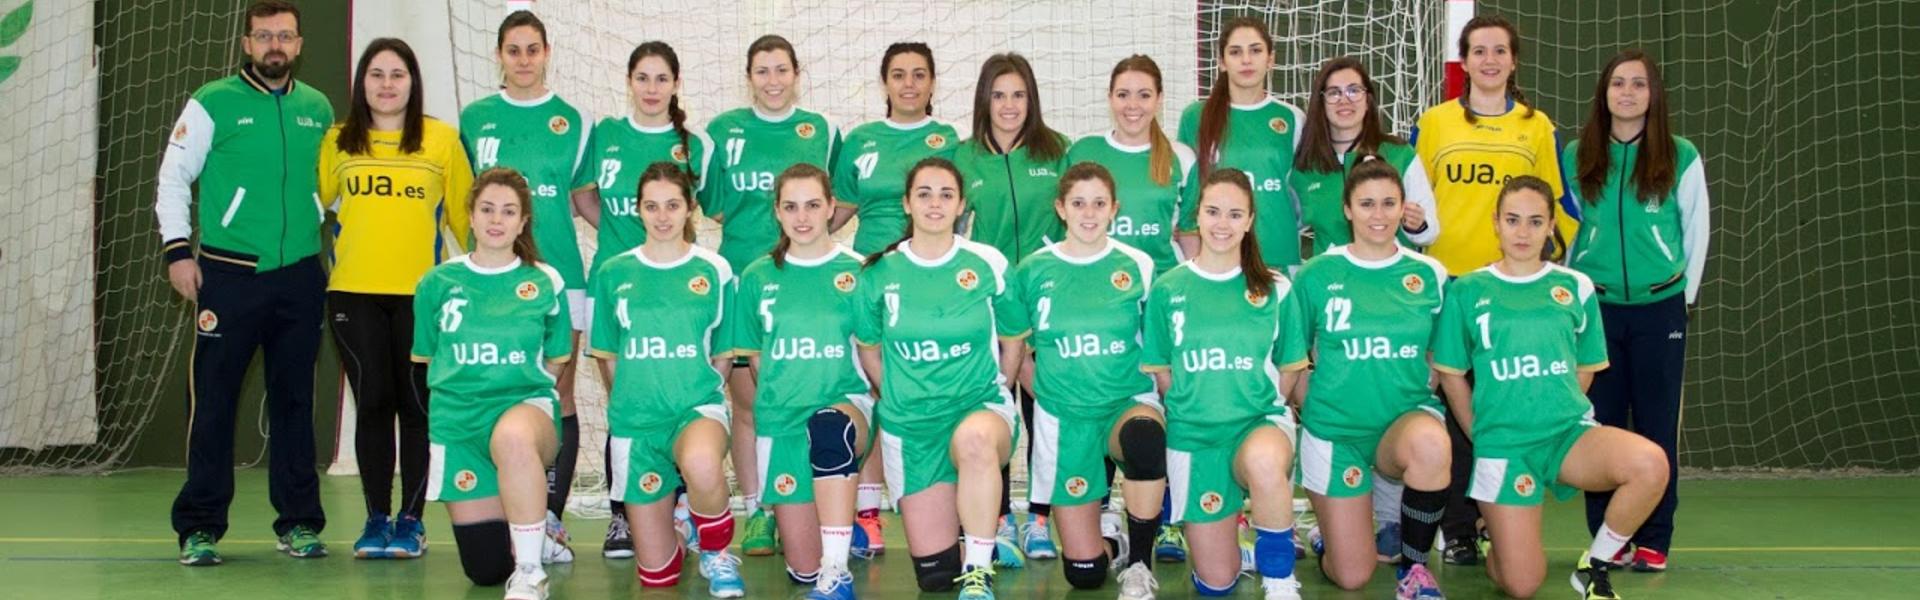 Equipo de Balonmano femenino de la Universidad de Jaén